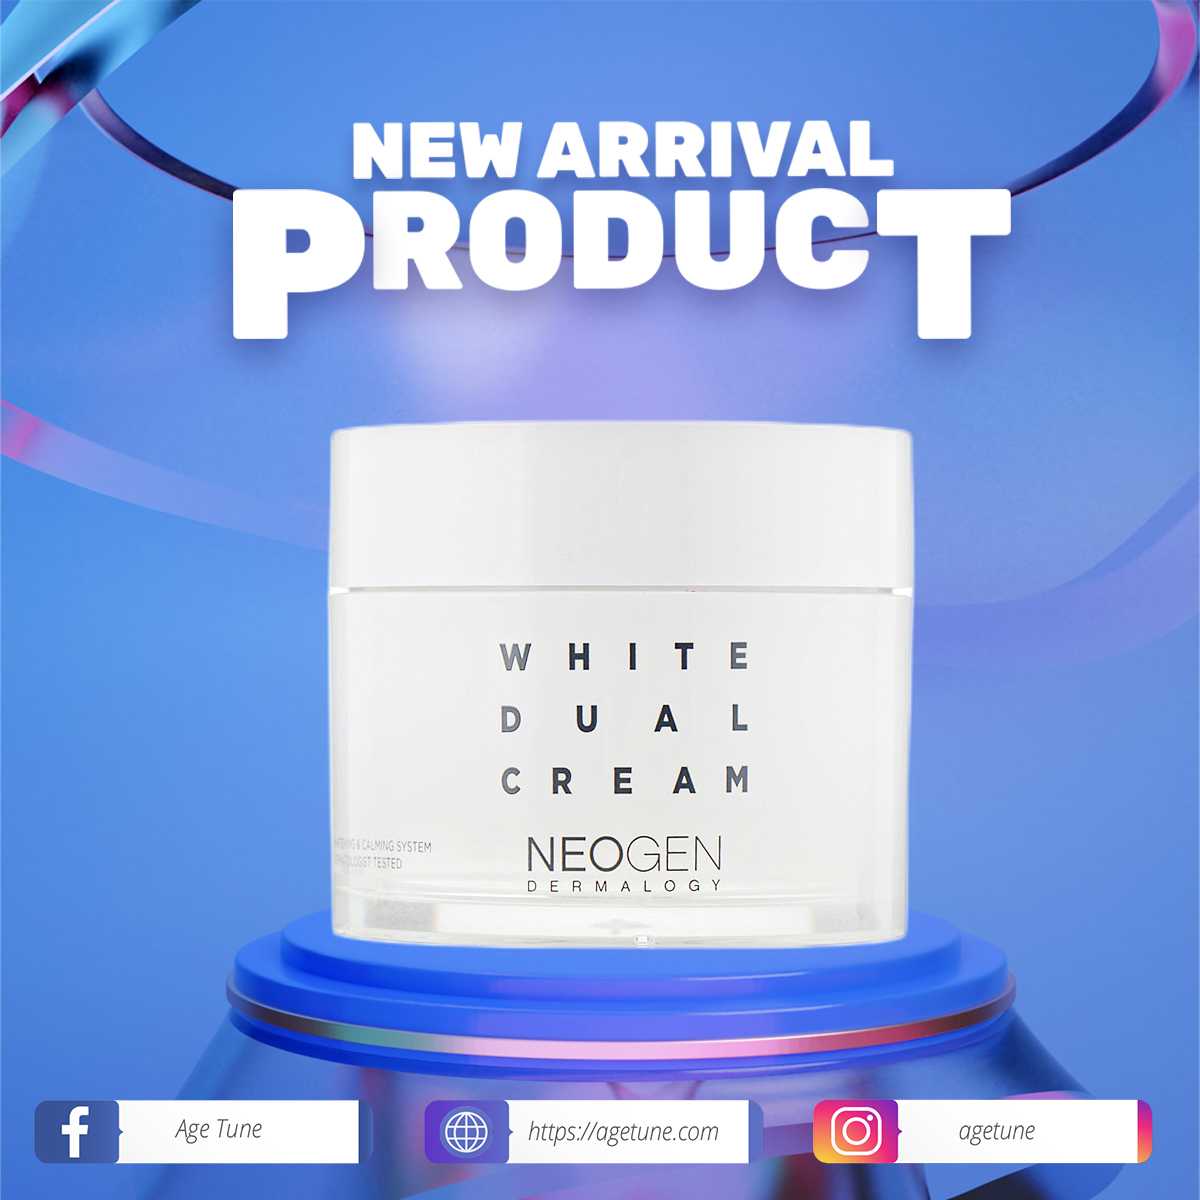 NEOGEN DERMALOGY White Dual Cream